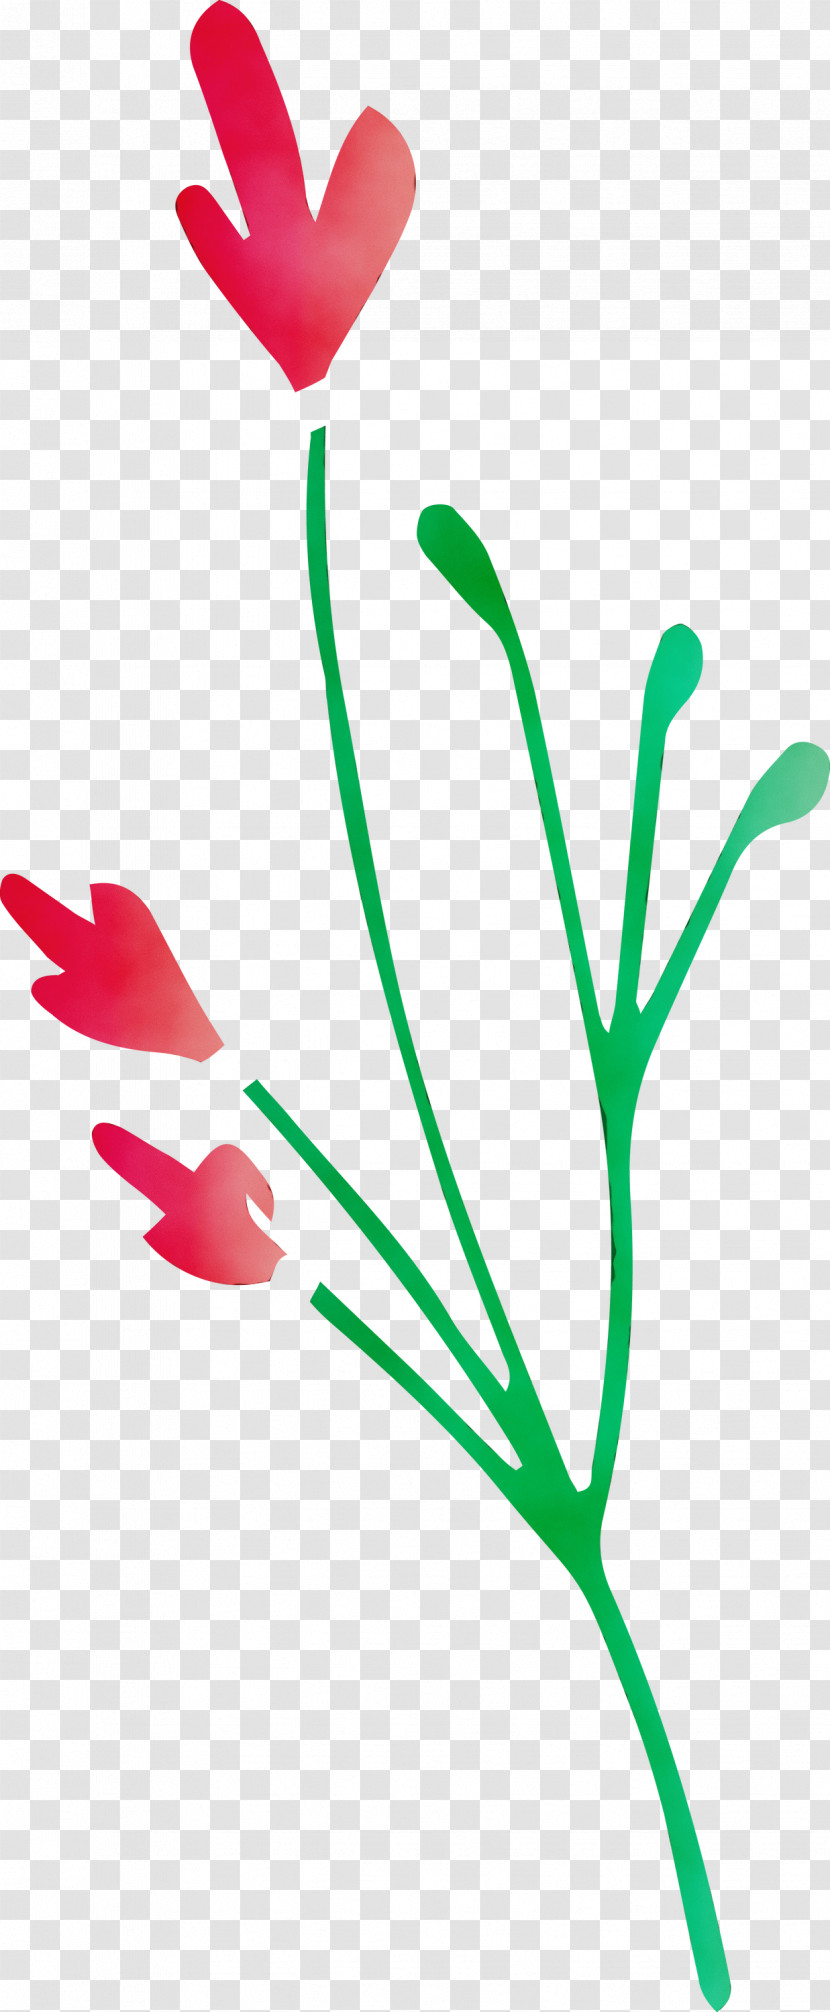 Plant Stem Petal Leaf Green Line Transparent PNG